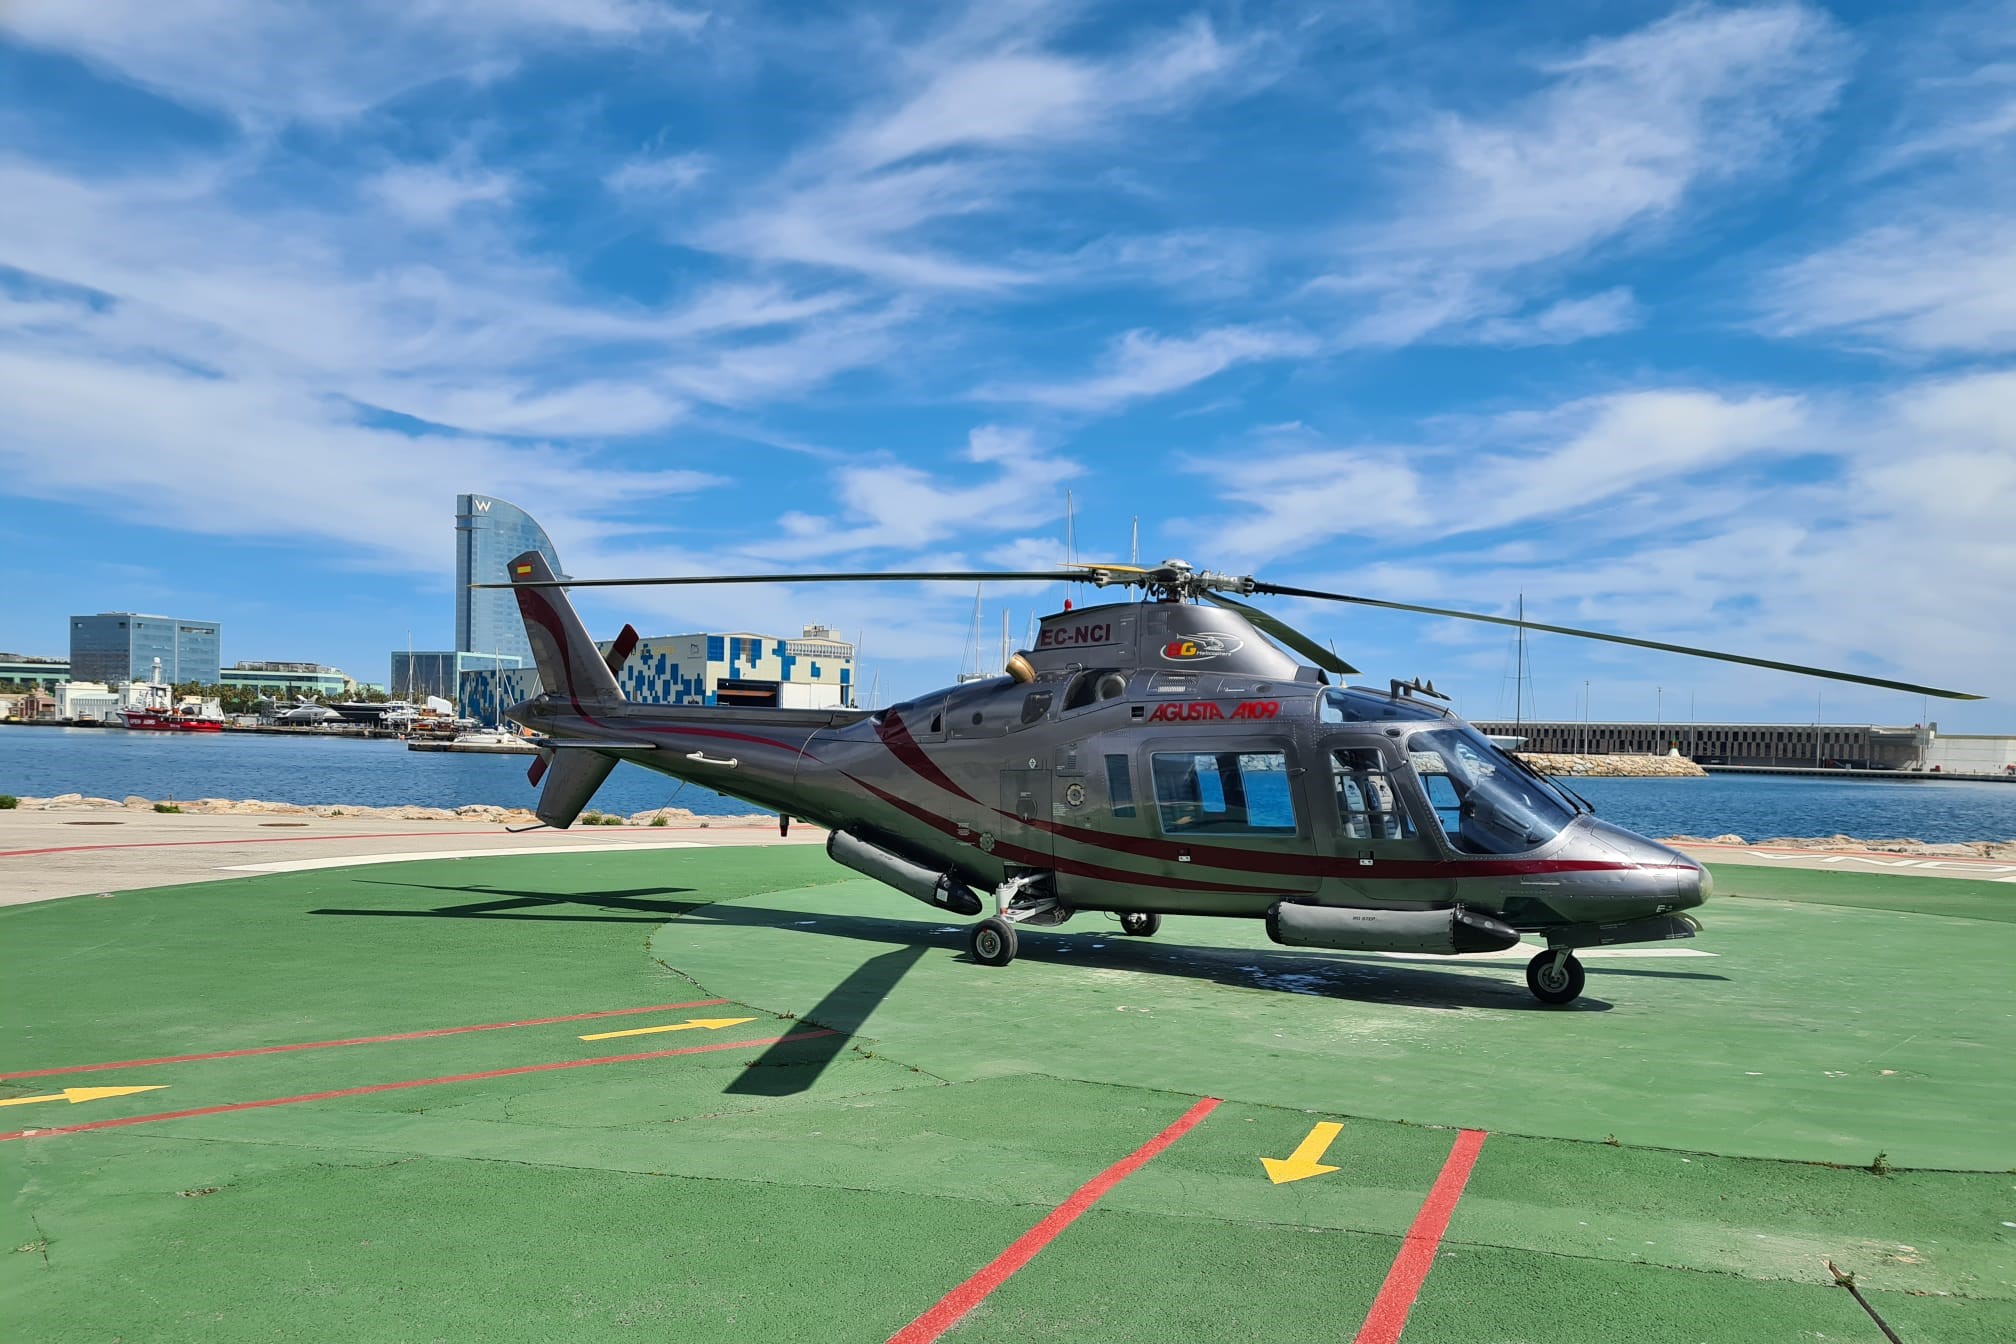 巴塞羅那全景直升機飛行體驗